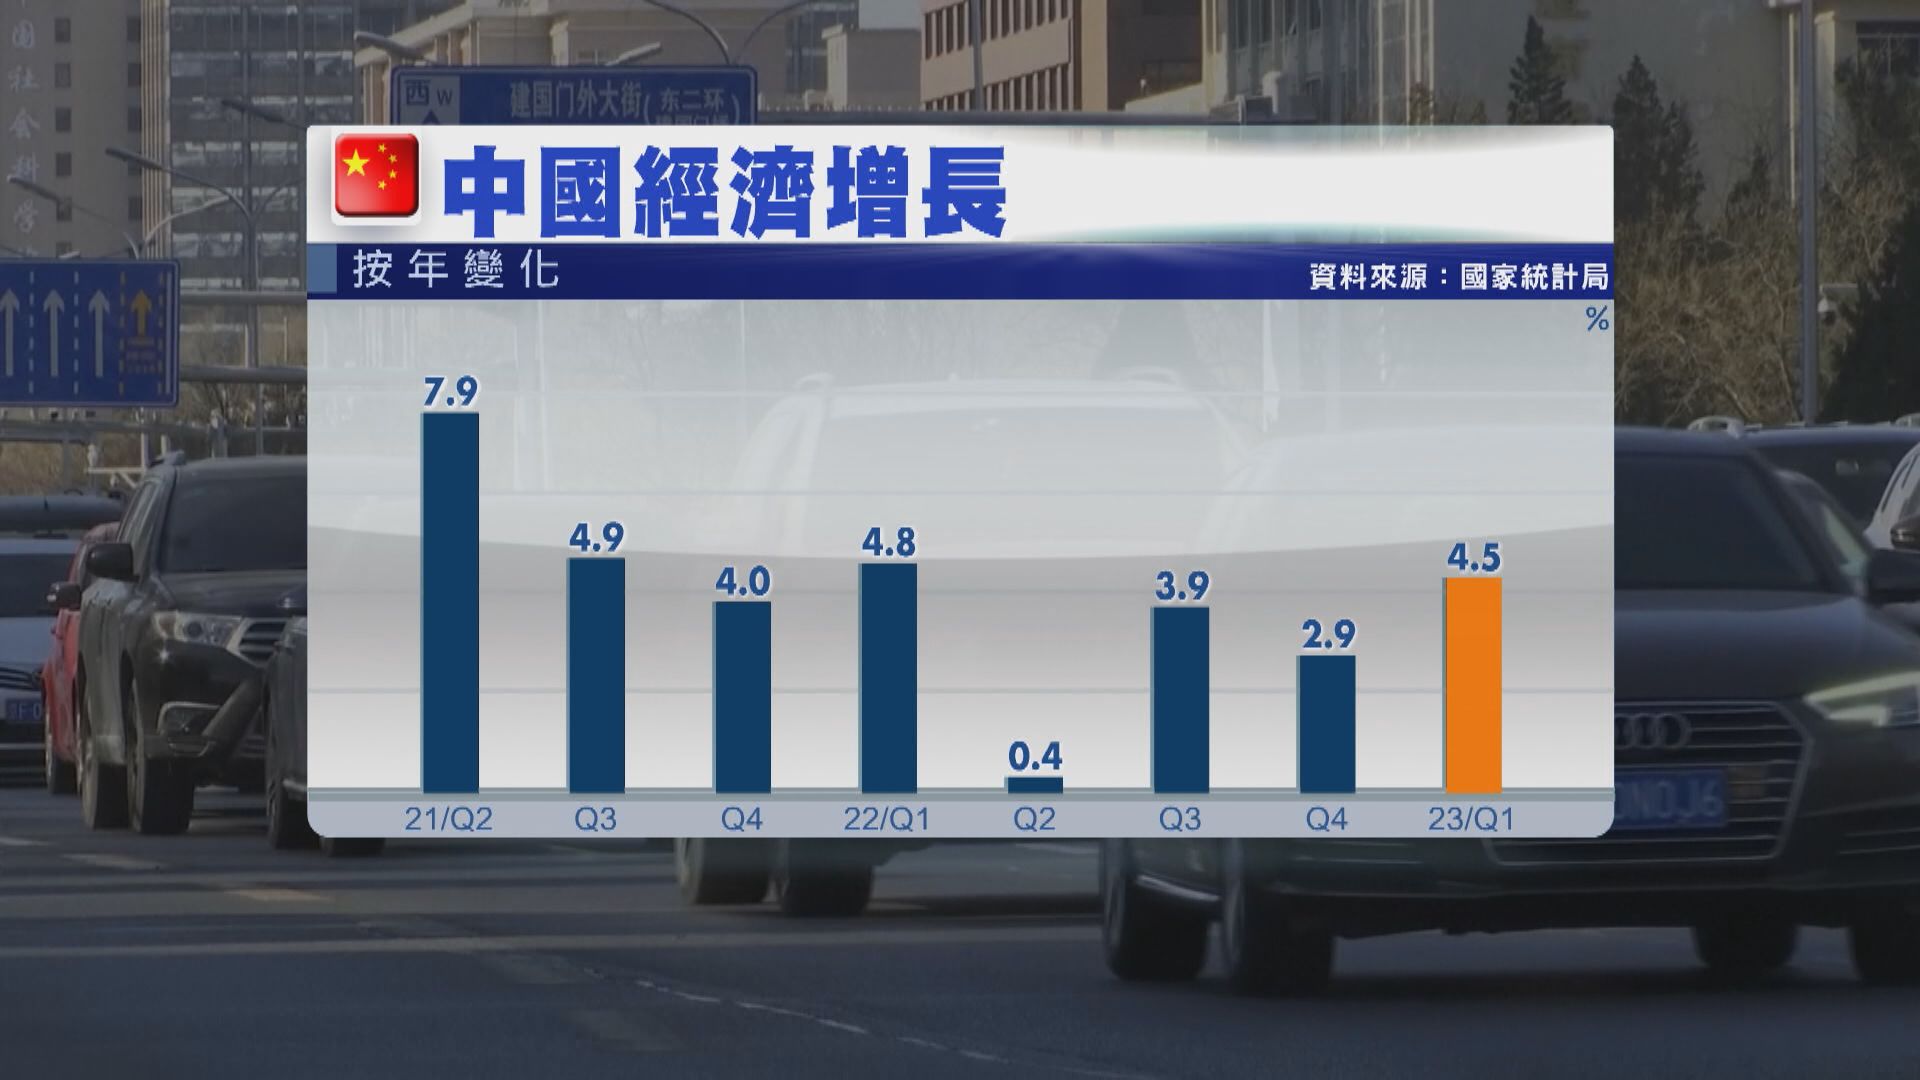 【中國經濟】內地首季GDP升4.5% 勝預期 見四季以來最快增速